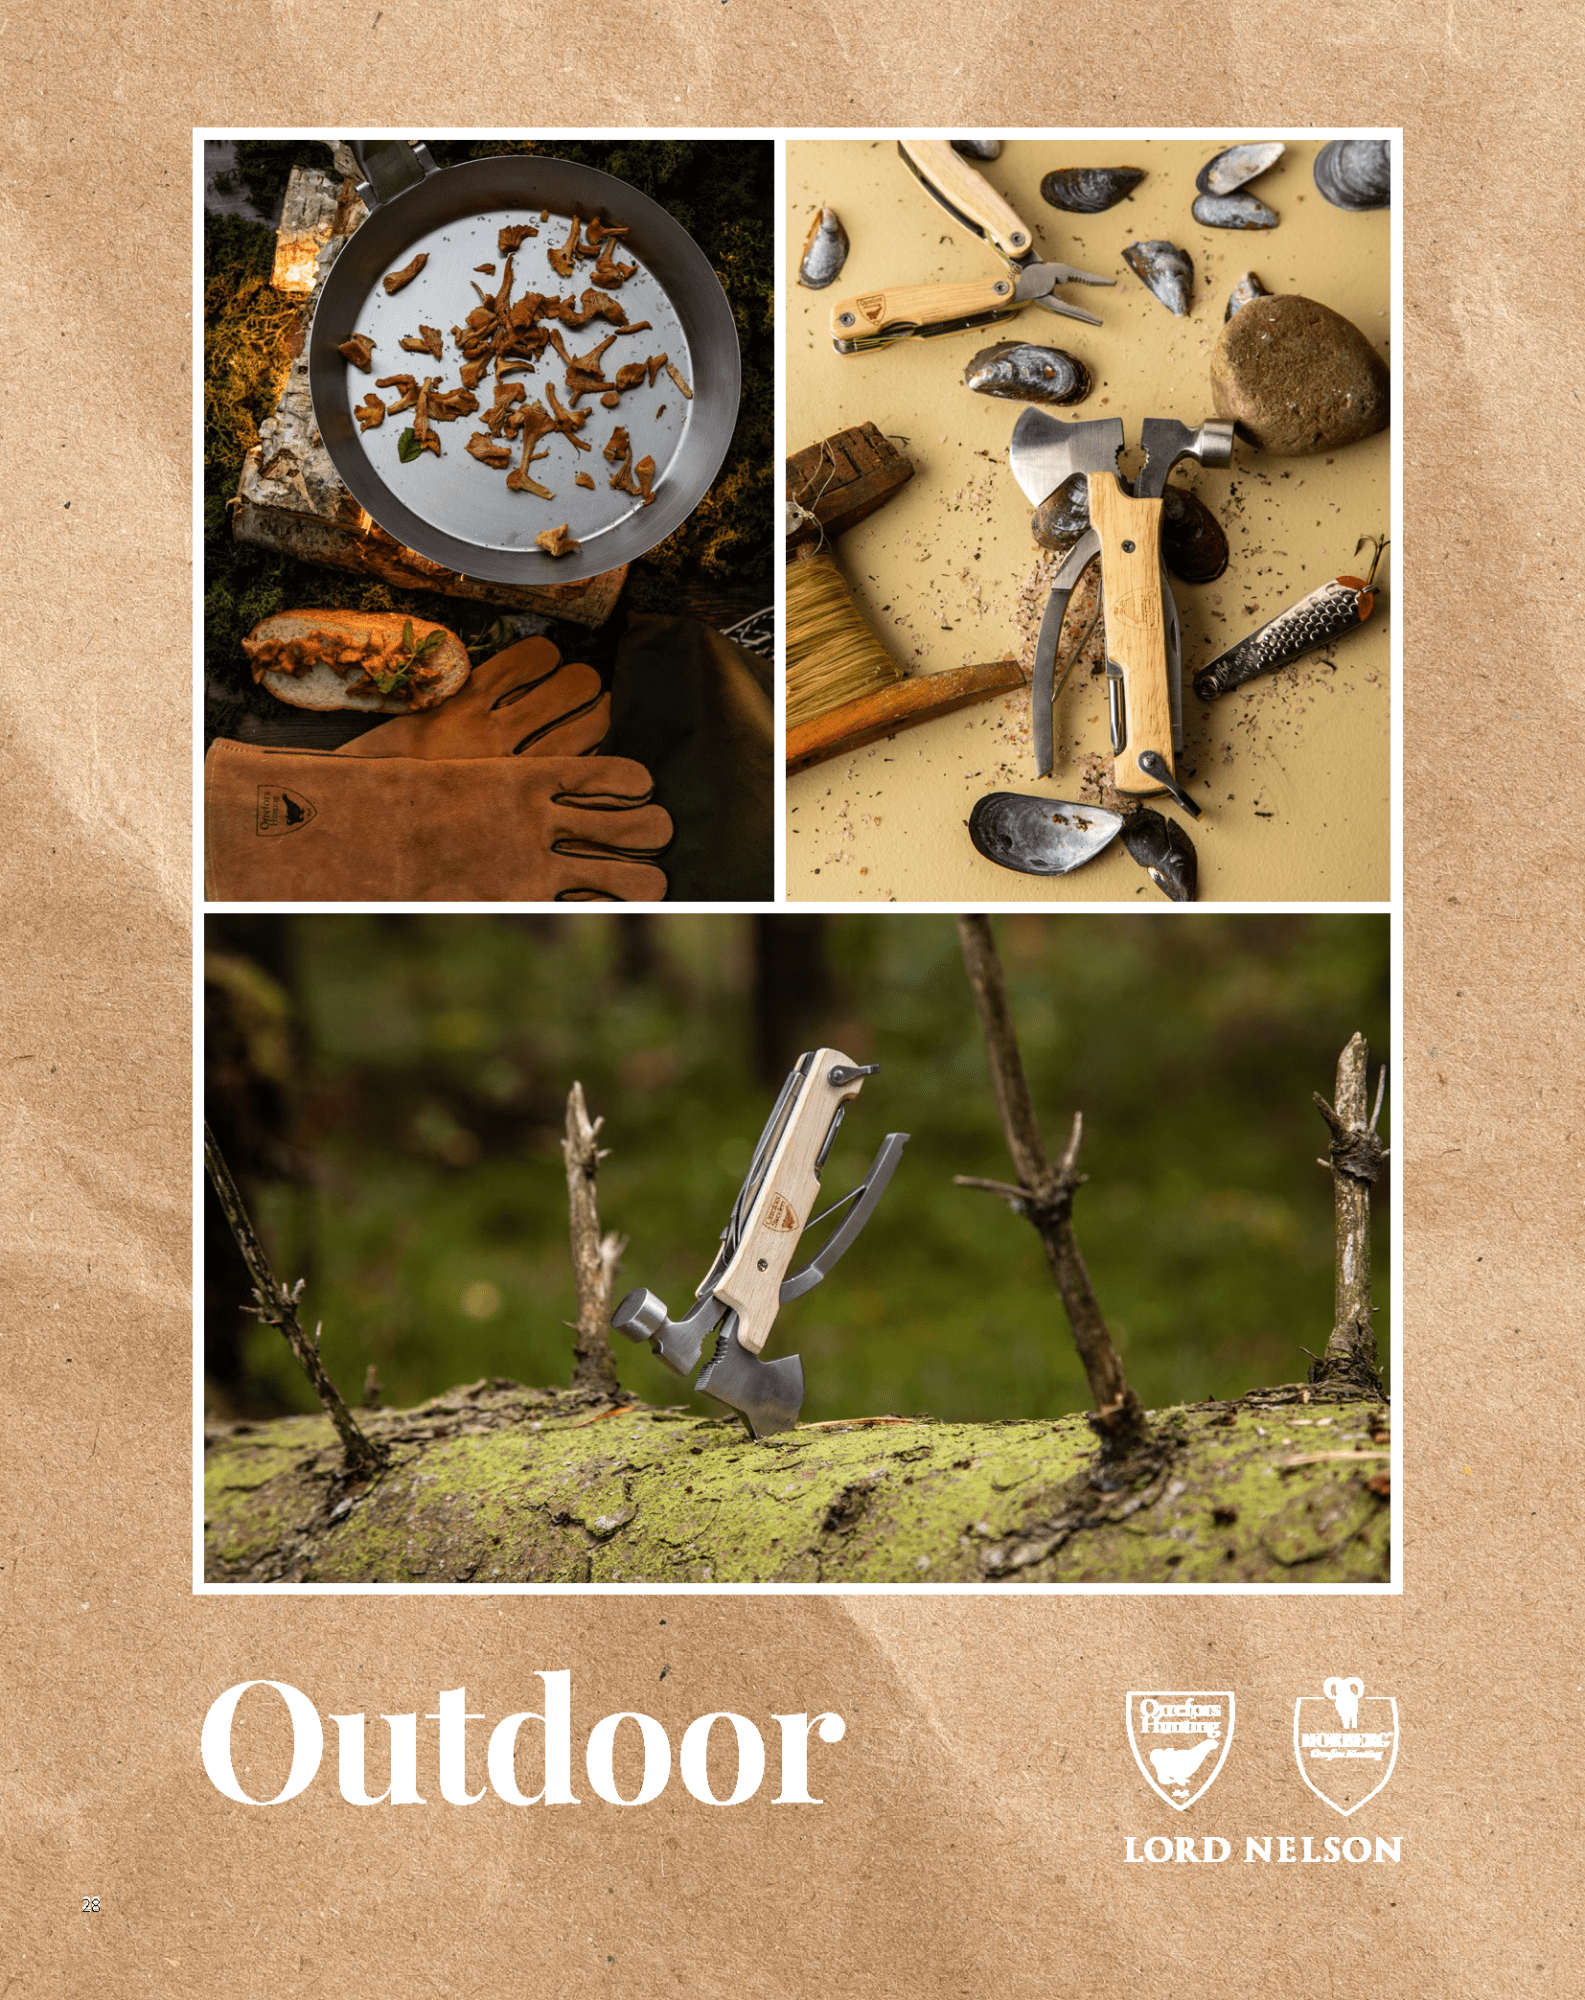 Outdoor - Orrefors Hunting, Morberg, plädar, grilltillbehör, kylväskor, paraplyer - Lindströms Reklam och Profil